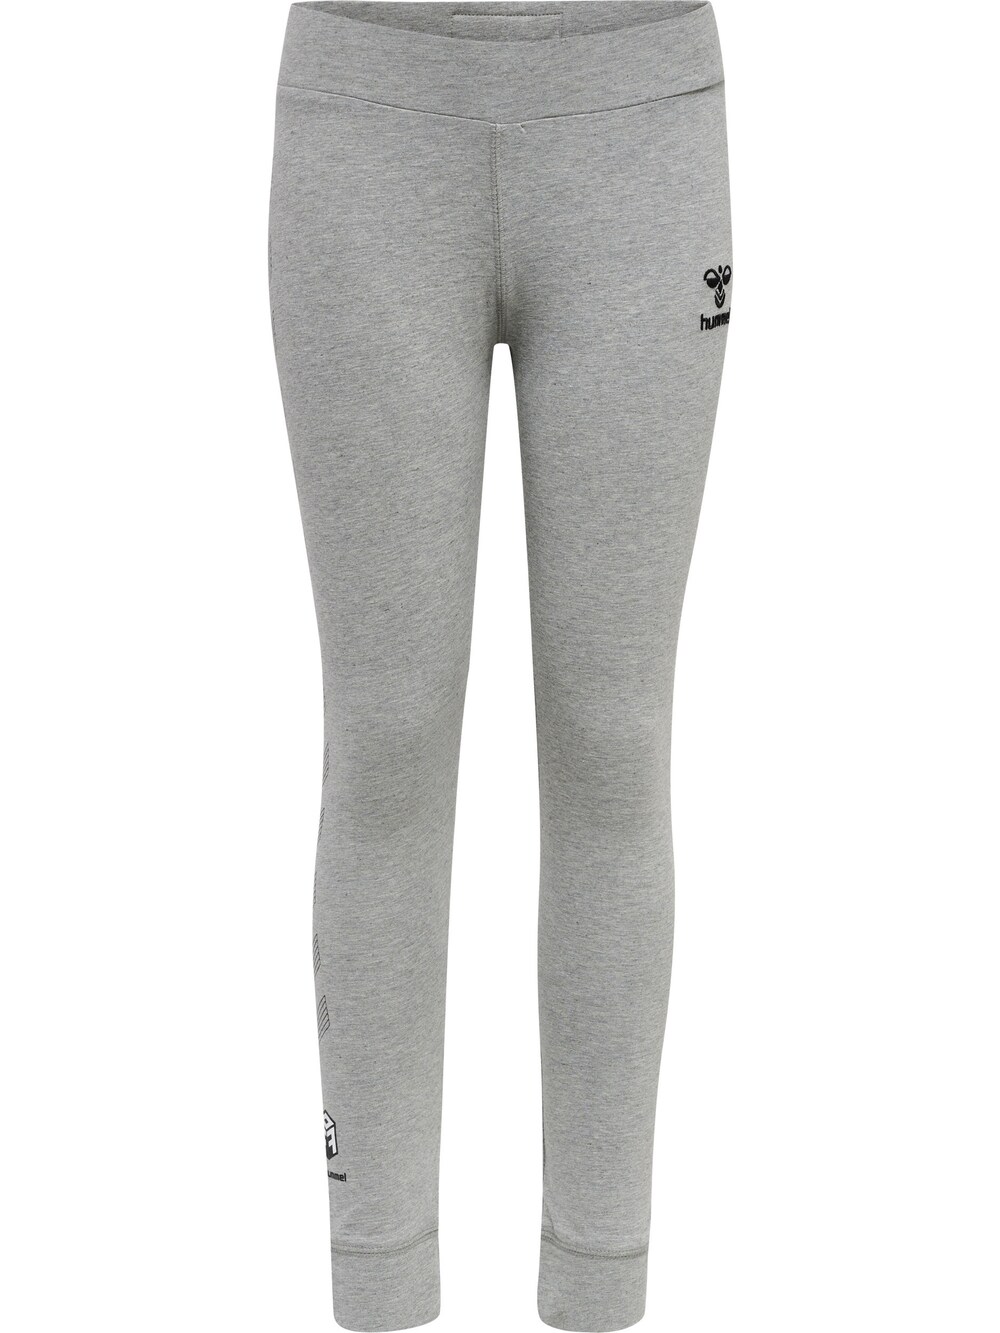 Узкие тренировочные брюки Hummel, пестрый серый